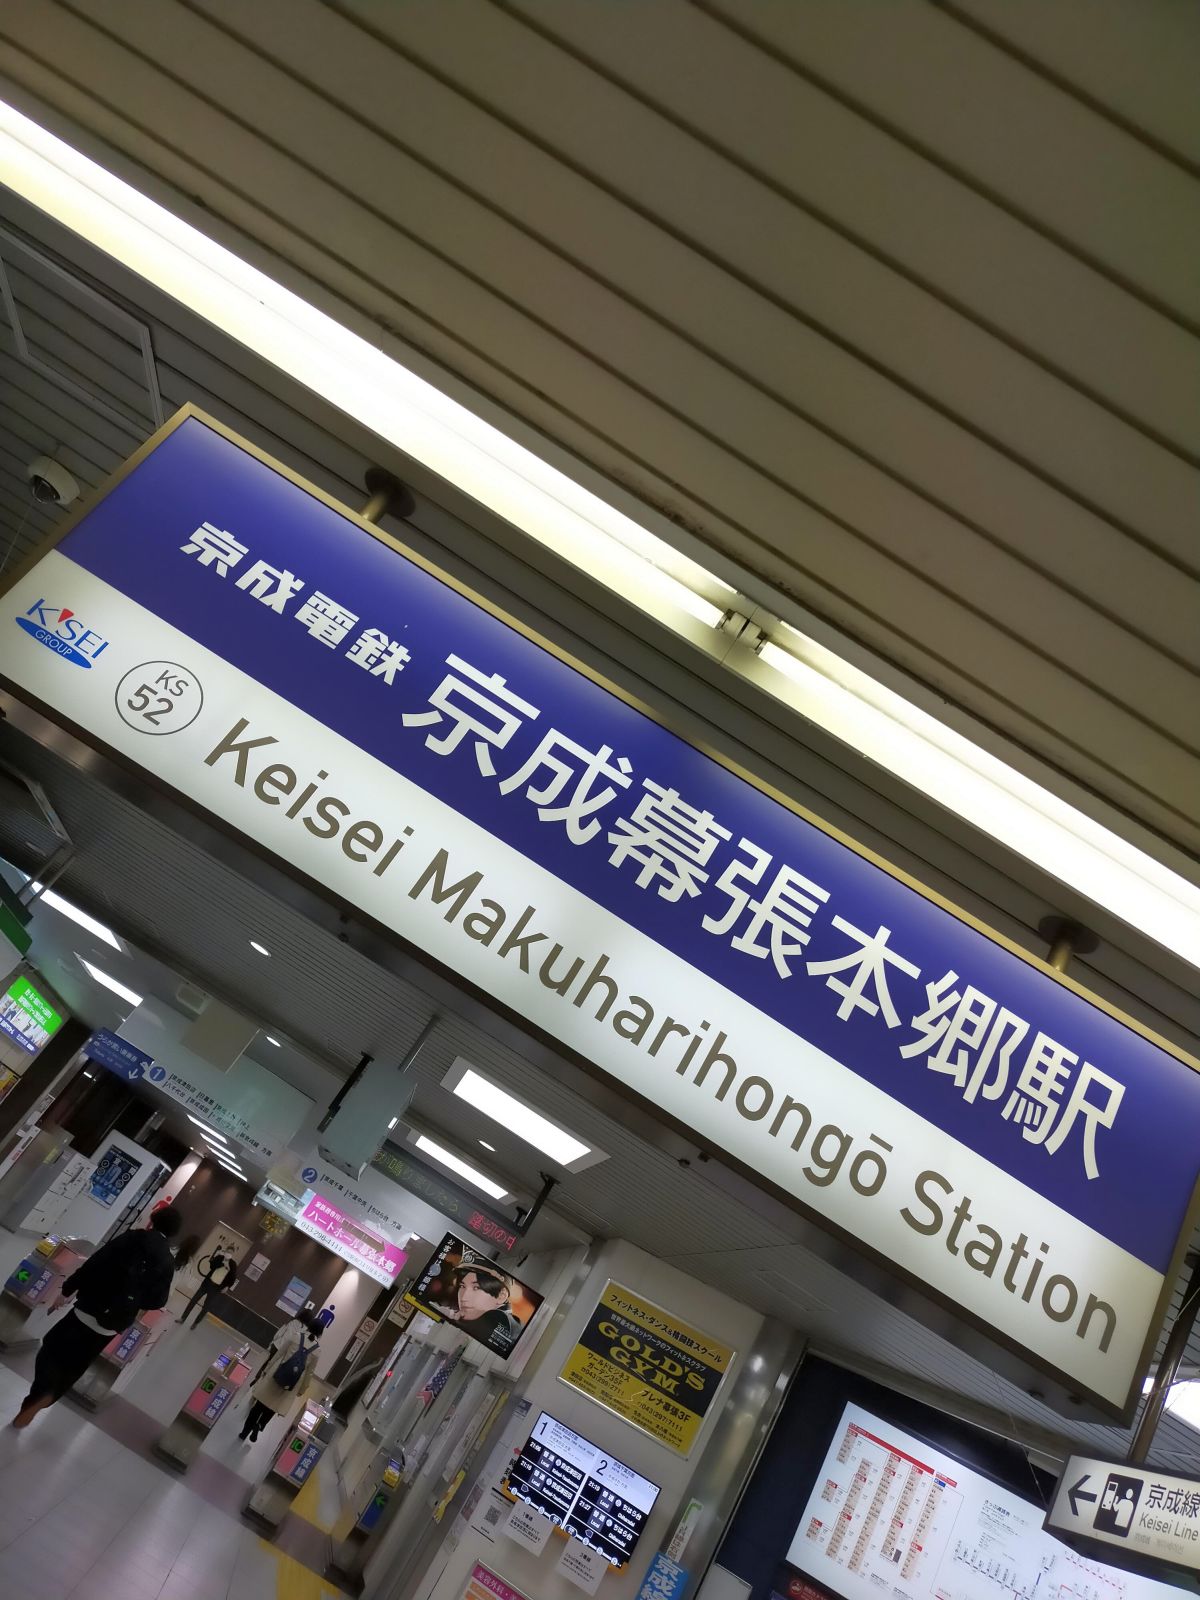 京成幕張本郷駅